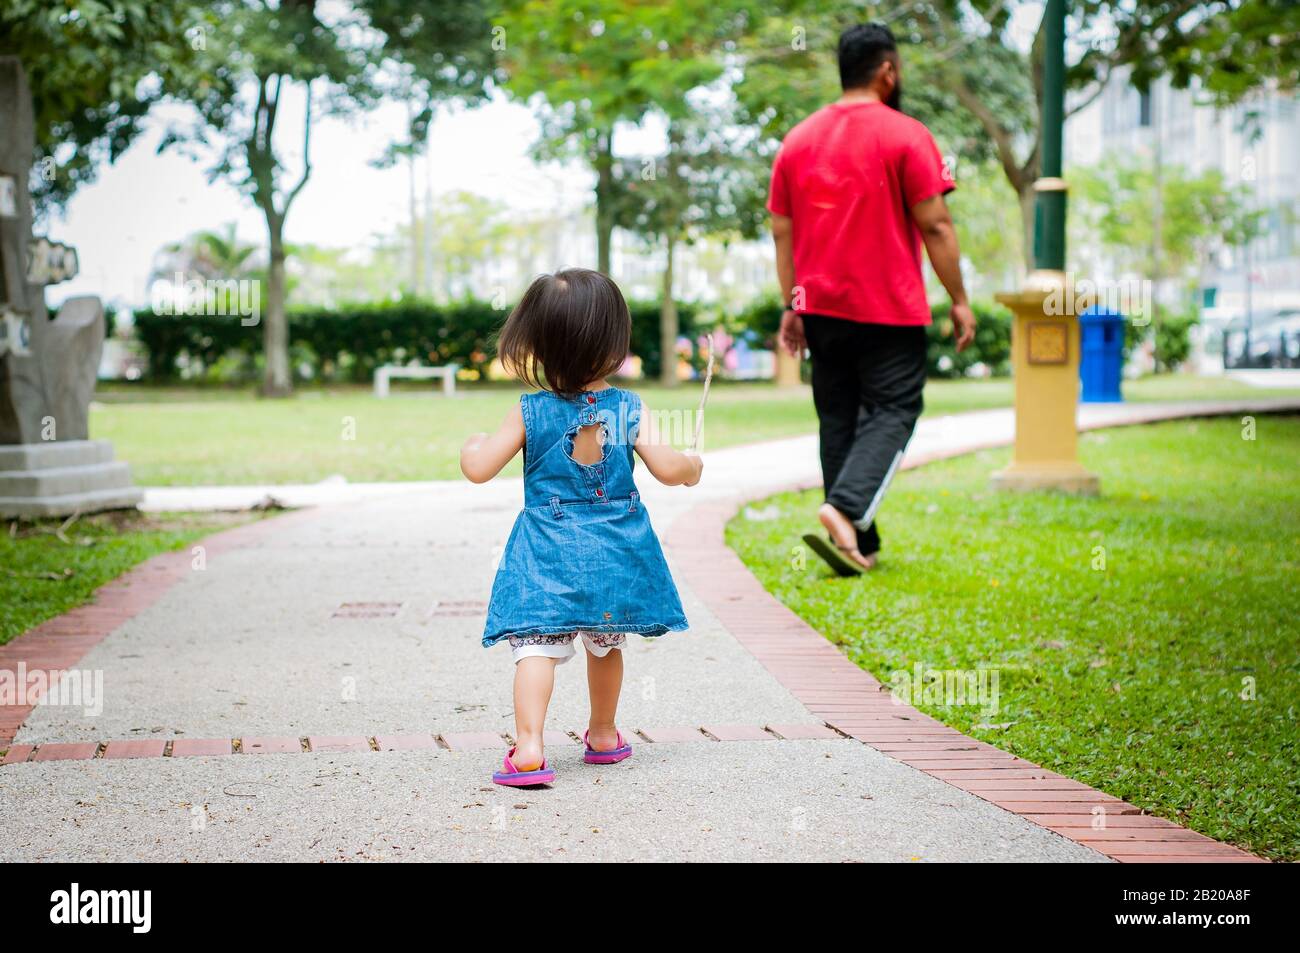 Asiatische 1-jährigen Kleinkind besetzt ist, gehen mit ihrem Vater in einem tropischen Park am Morgen. Exploration und Vaterschaft Konzept. Stockfoto